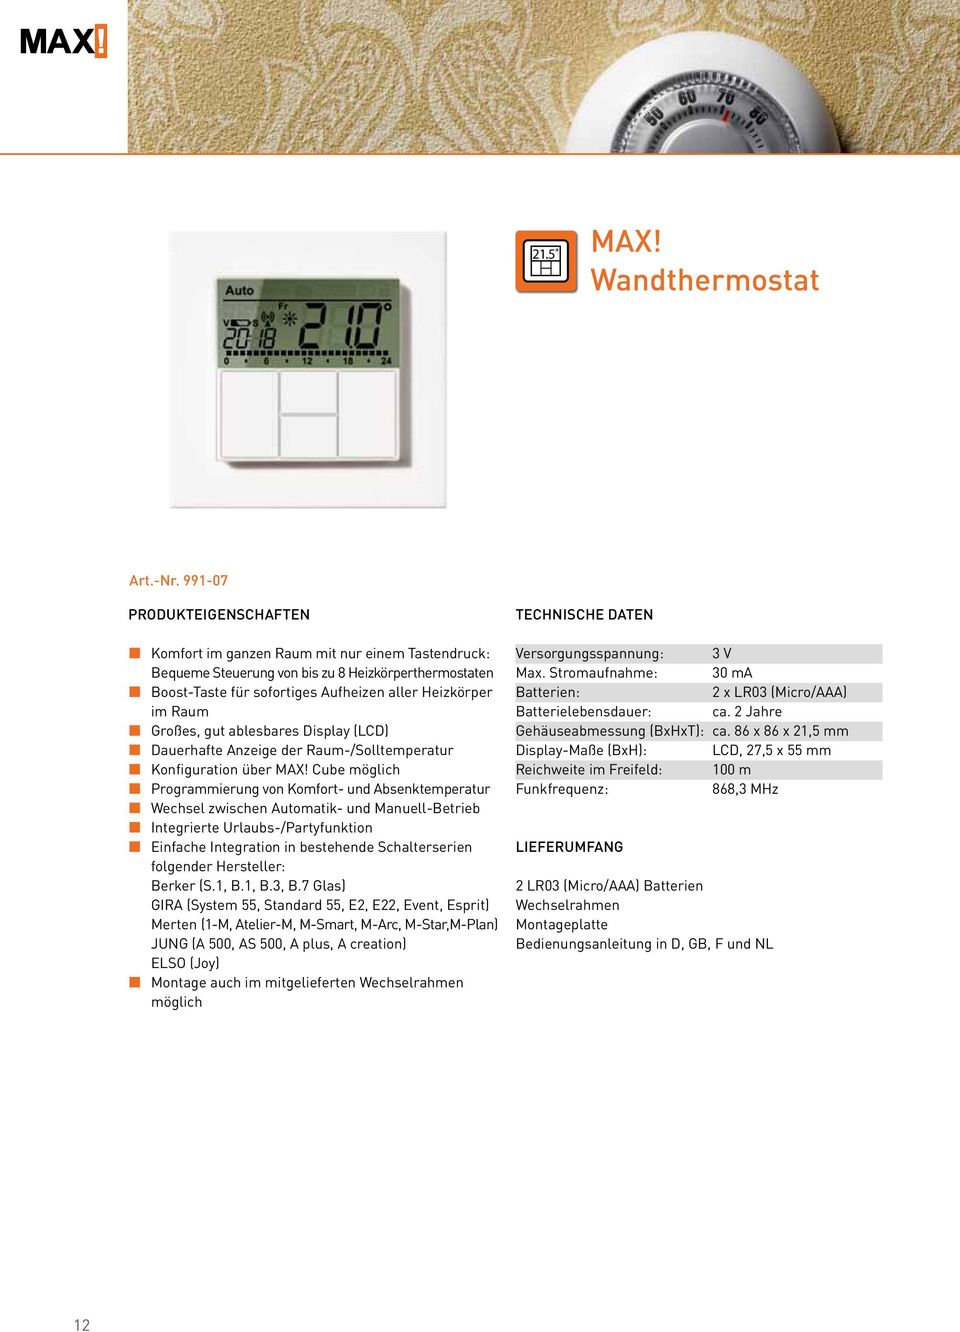 Großes, gut ablesbares Display (LCD) Dauerhafte Anzeige der Raum-/Solltemperatur Konfiguration über MAX!